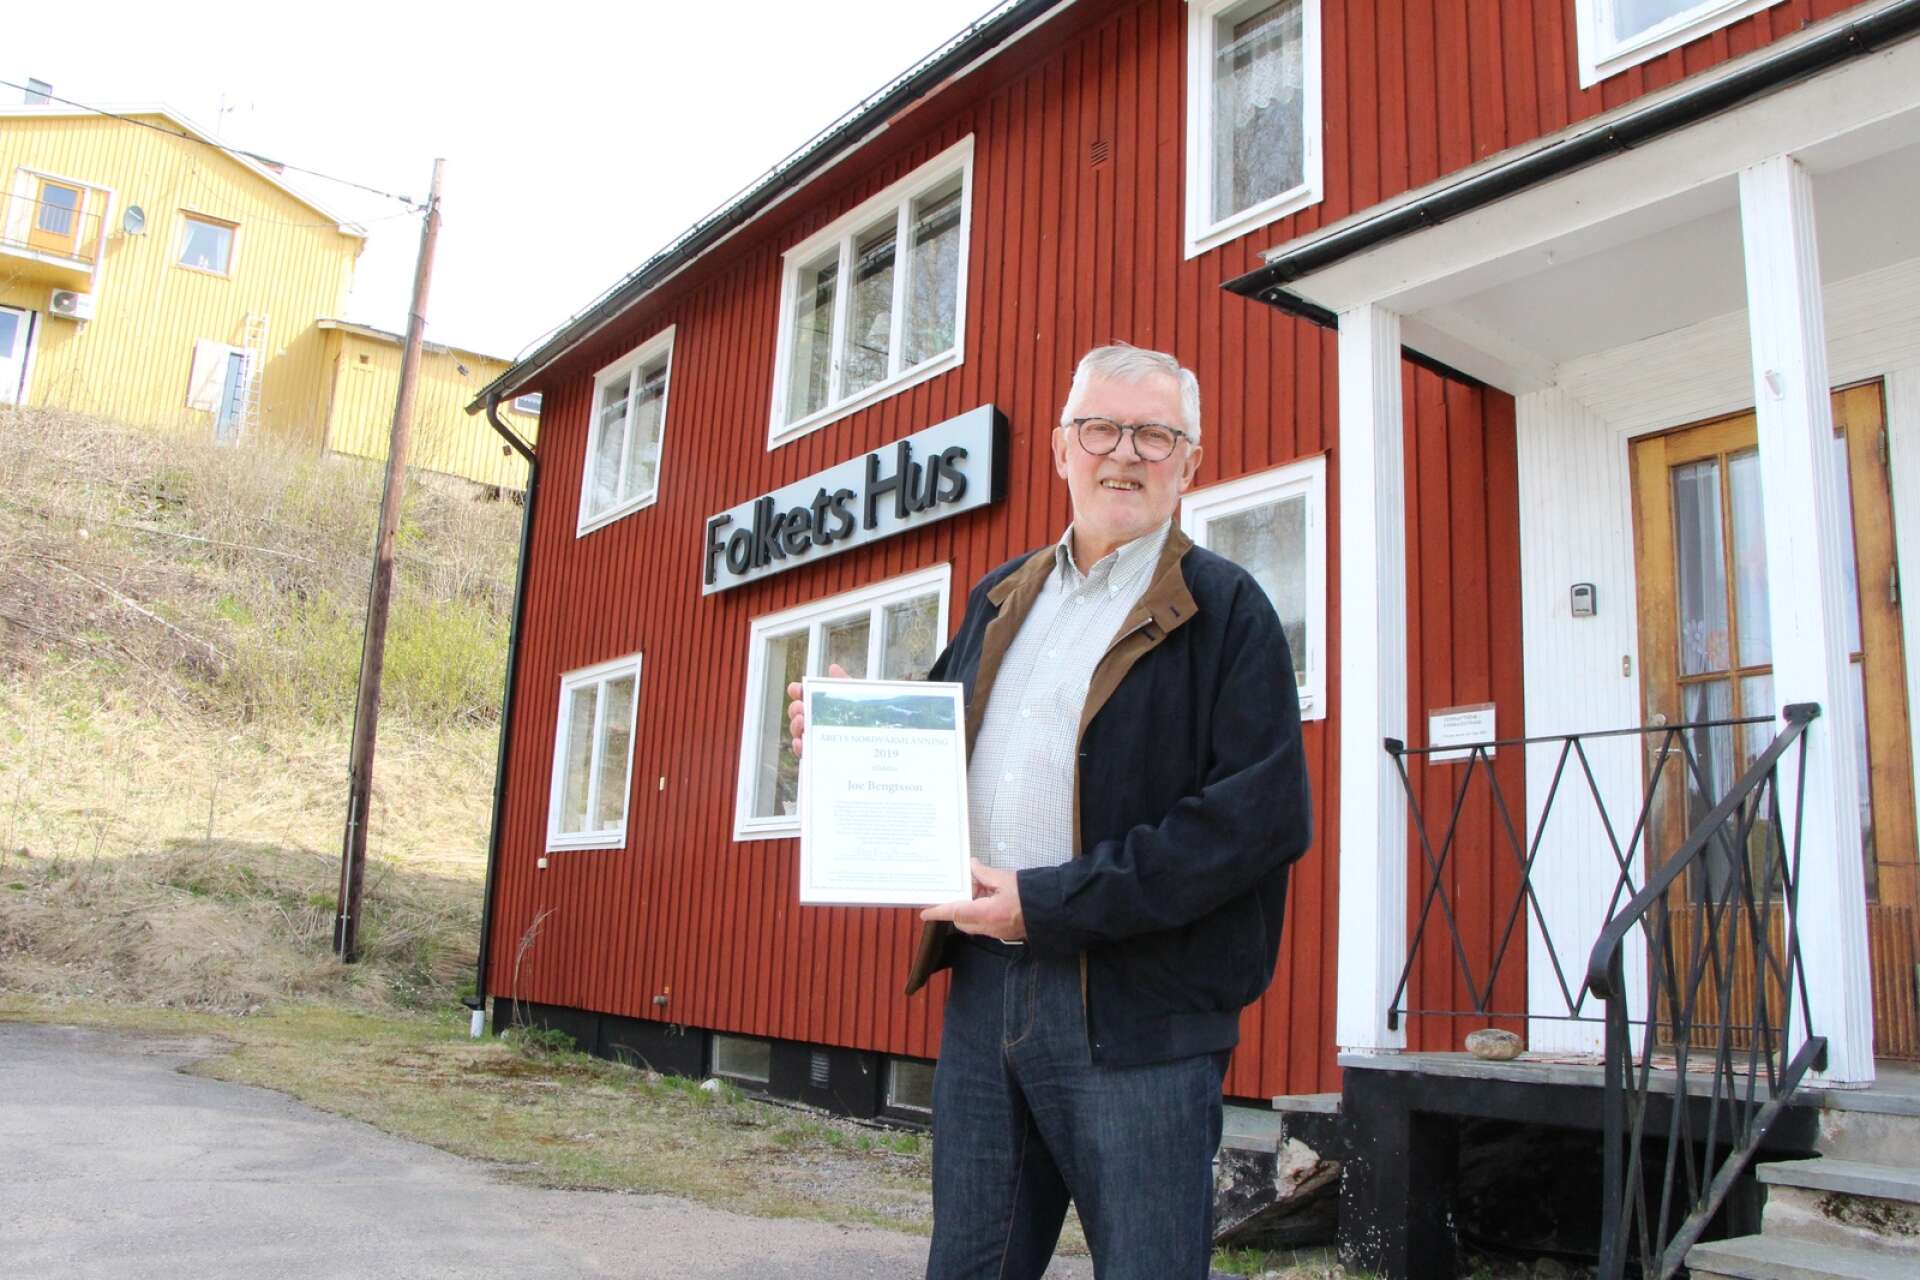 Joe Bengtsson, Kärrbackstrand. Årets nordvärmlänning 2019. President i Republiken Nordvärmland.